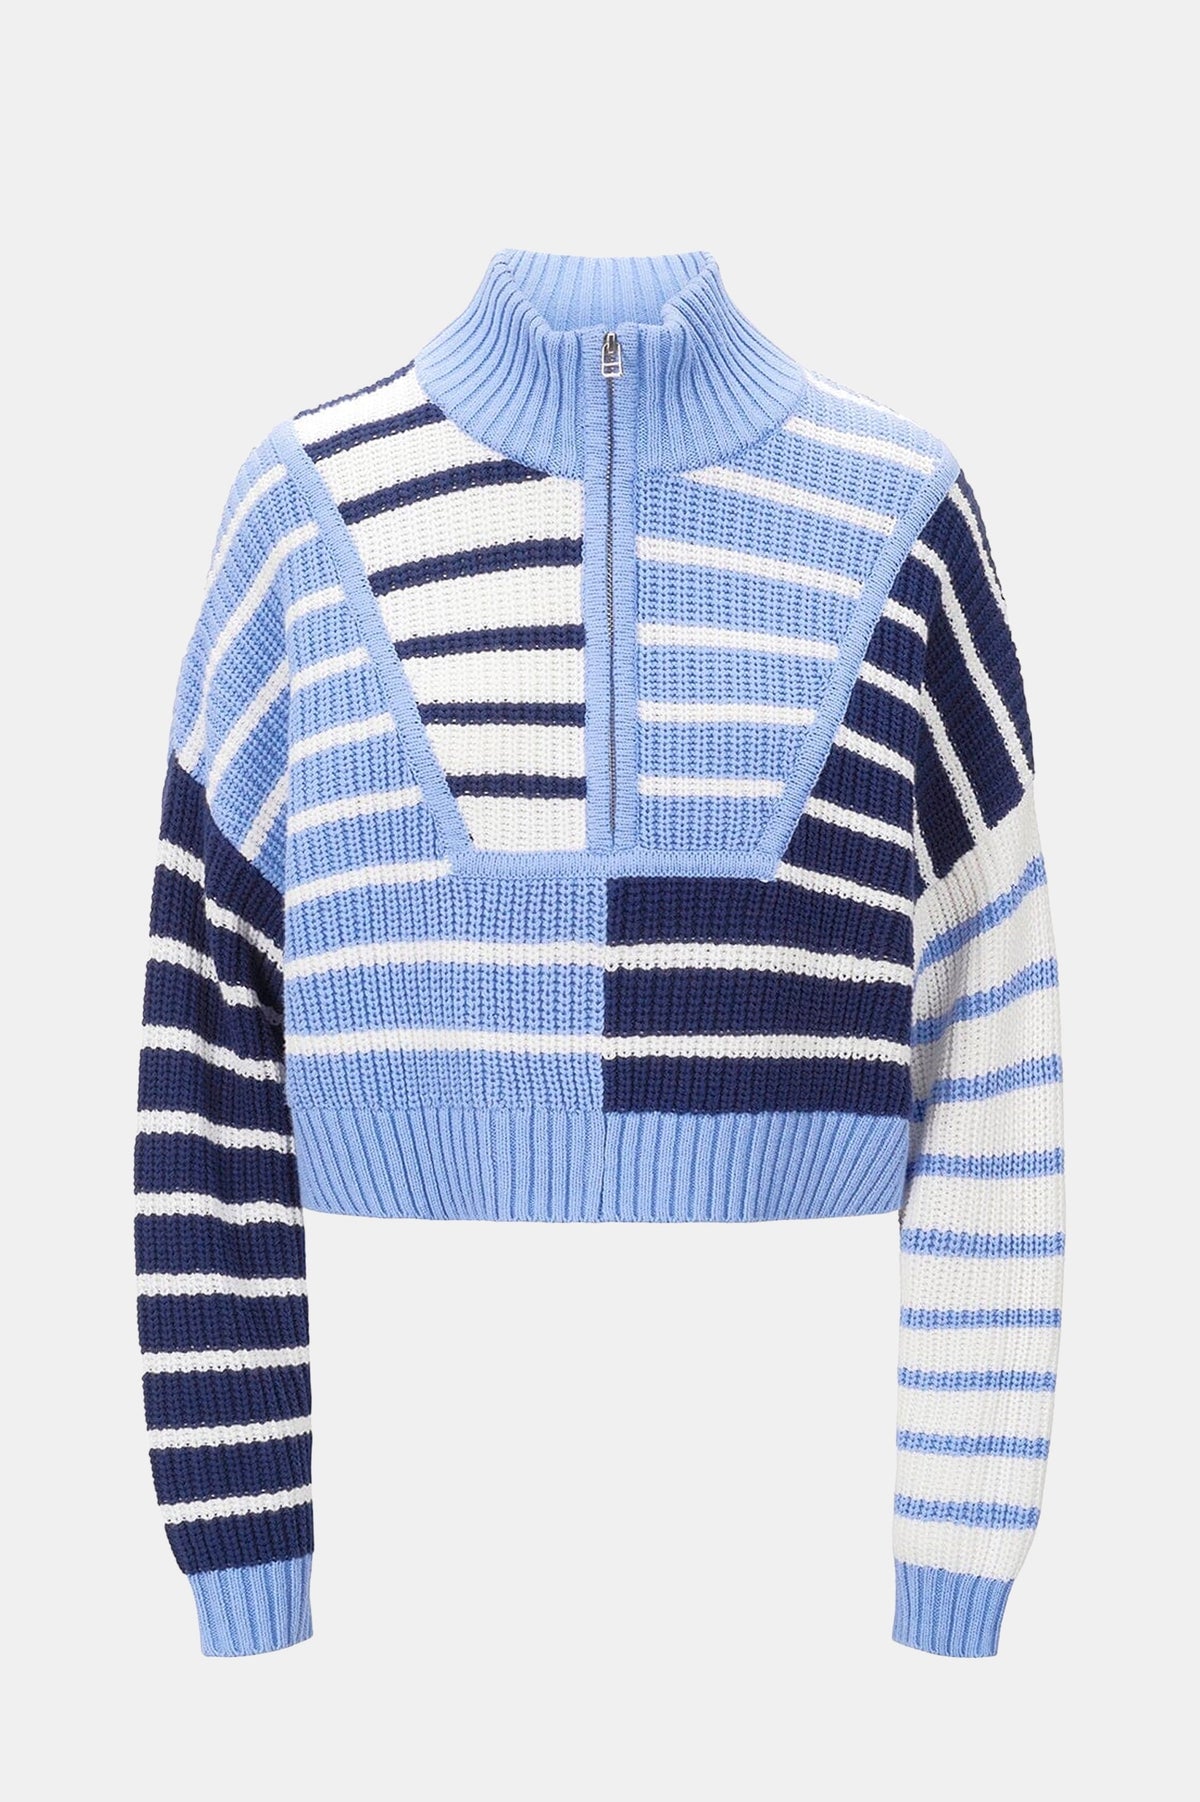 Hampton Cropped Sweater in Adriatic Stripe